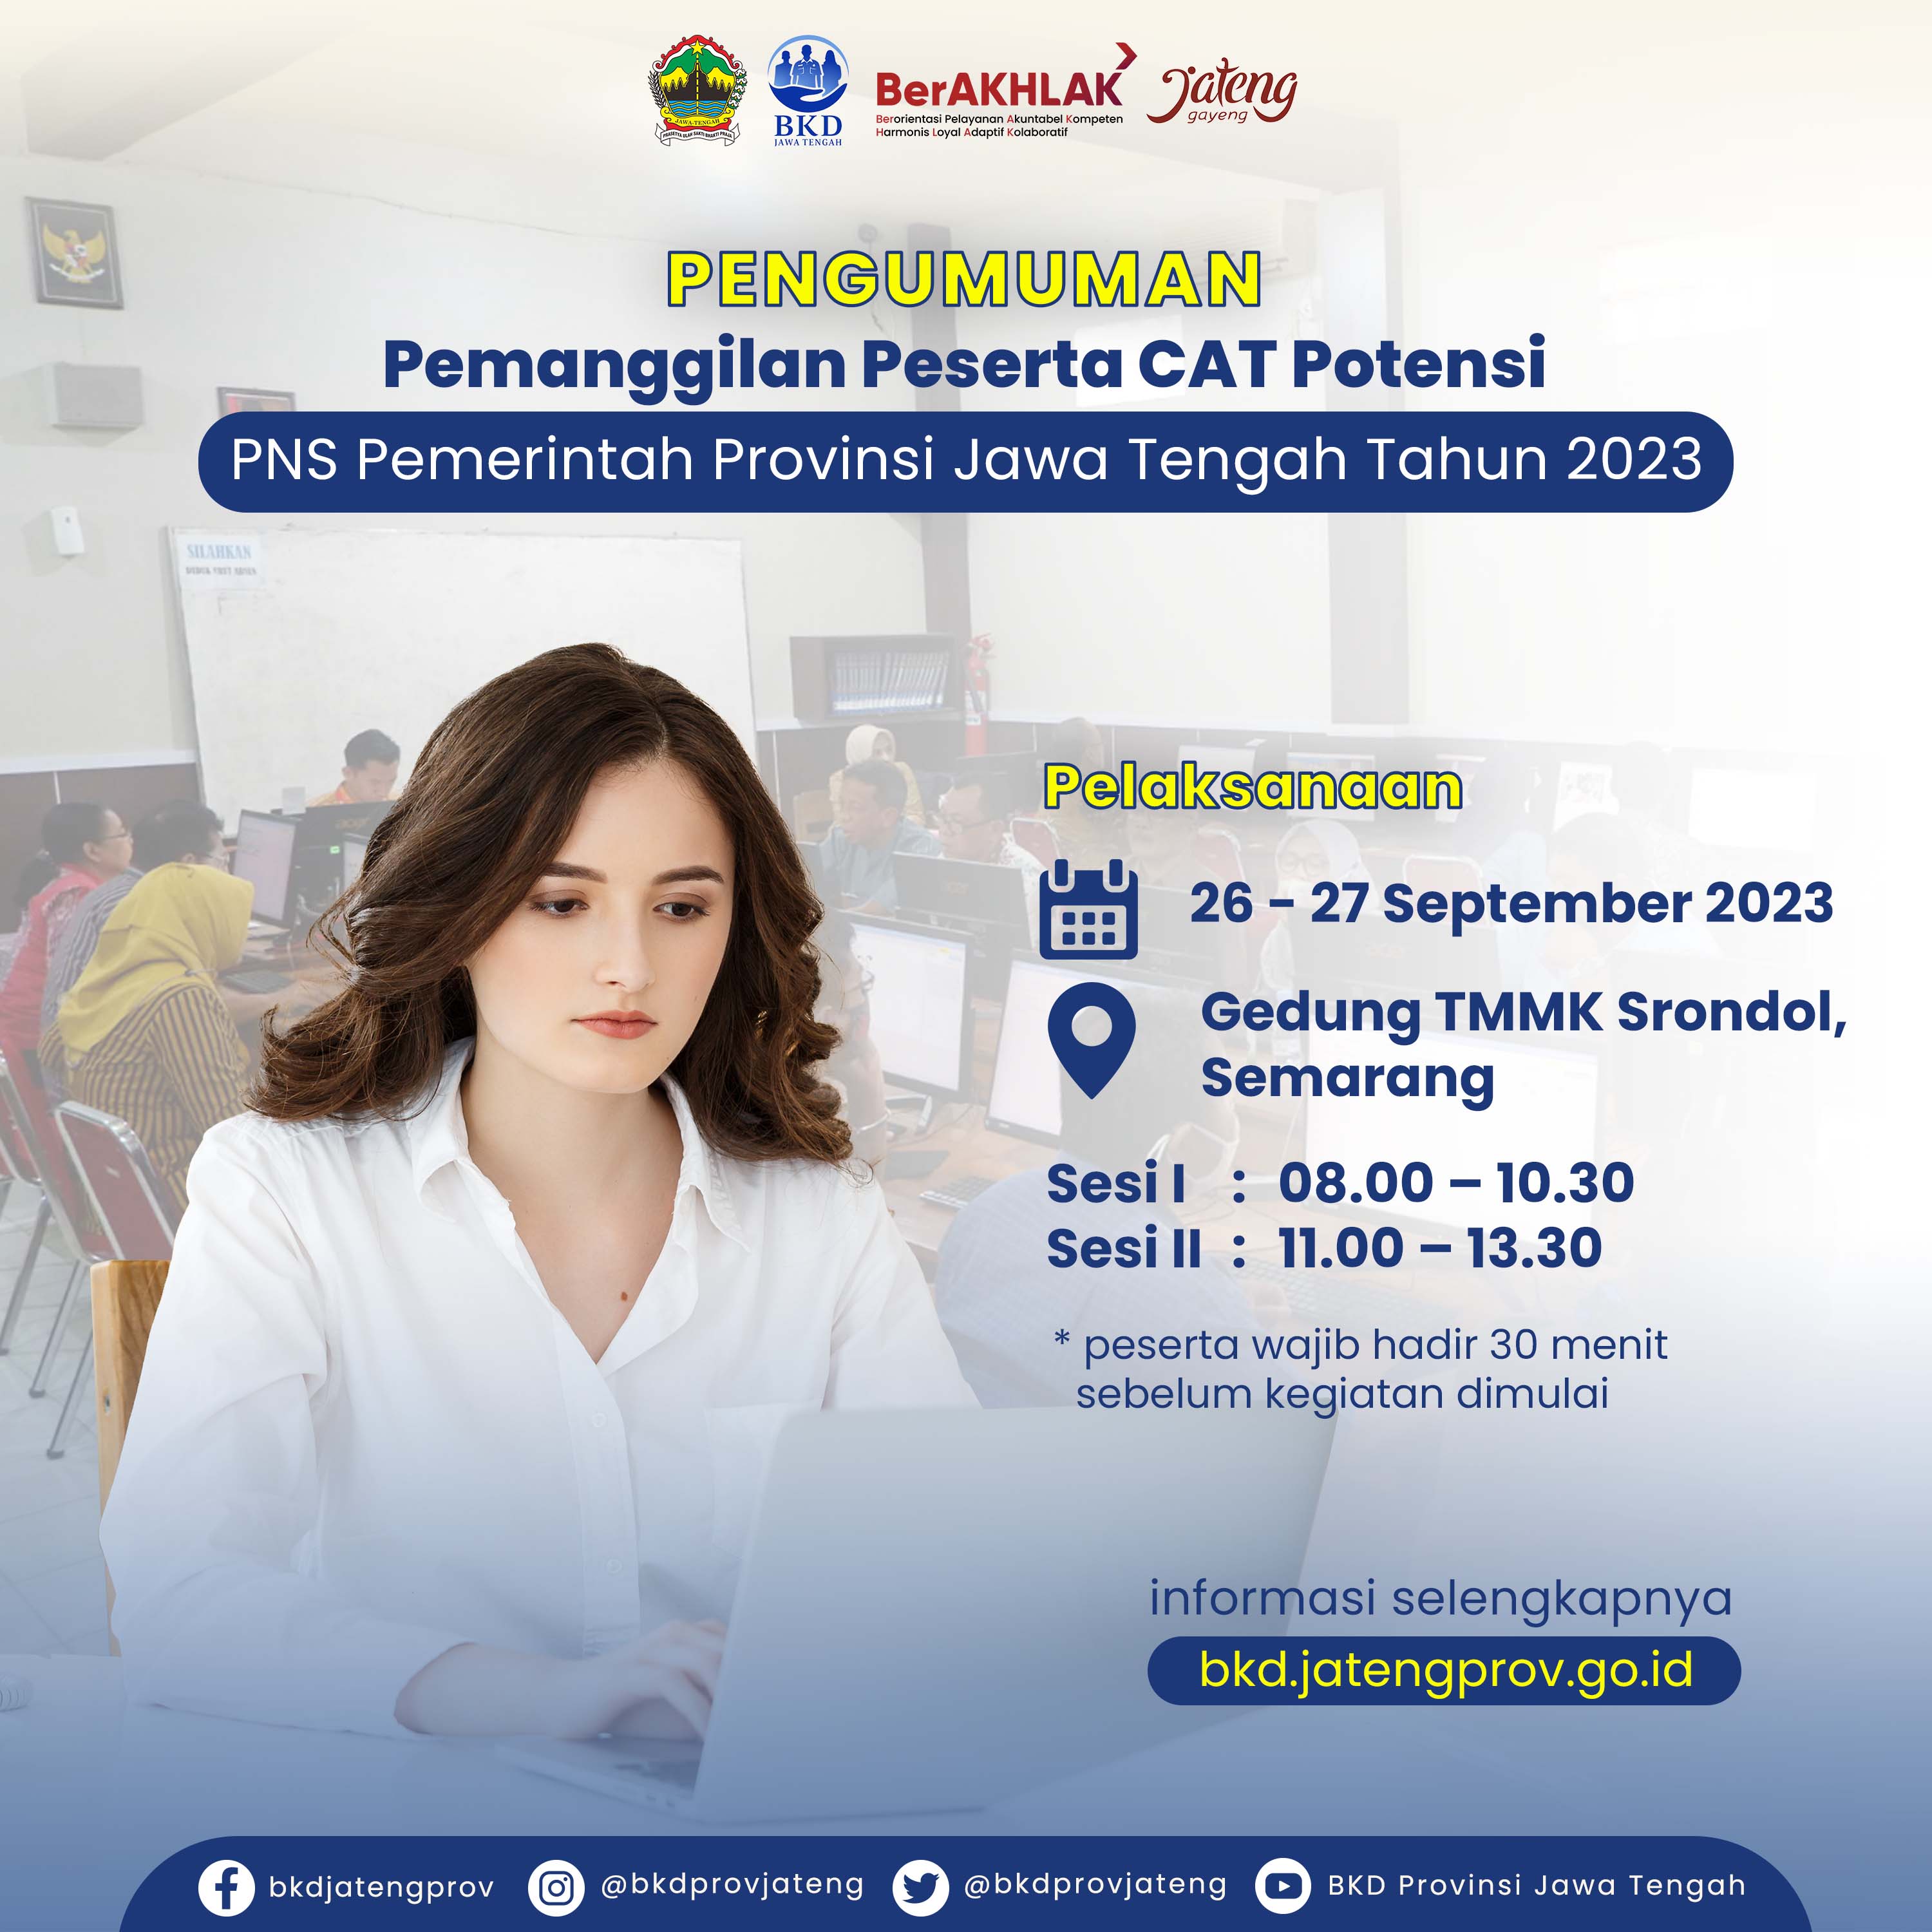 Pemanggilan Peserta CAT Potensi PNS Pemerintah Jawa Tengah